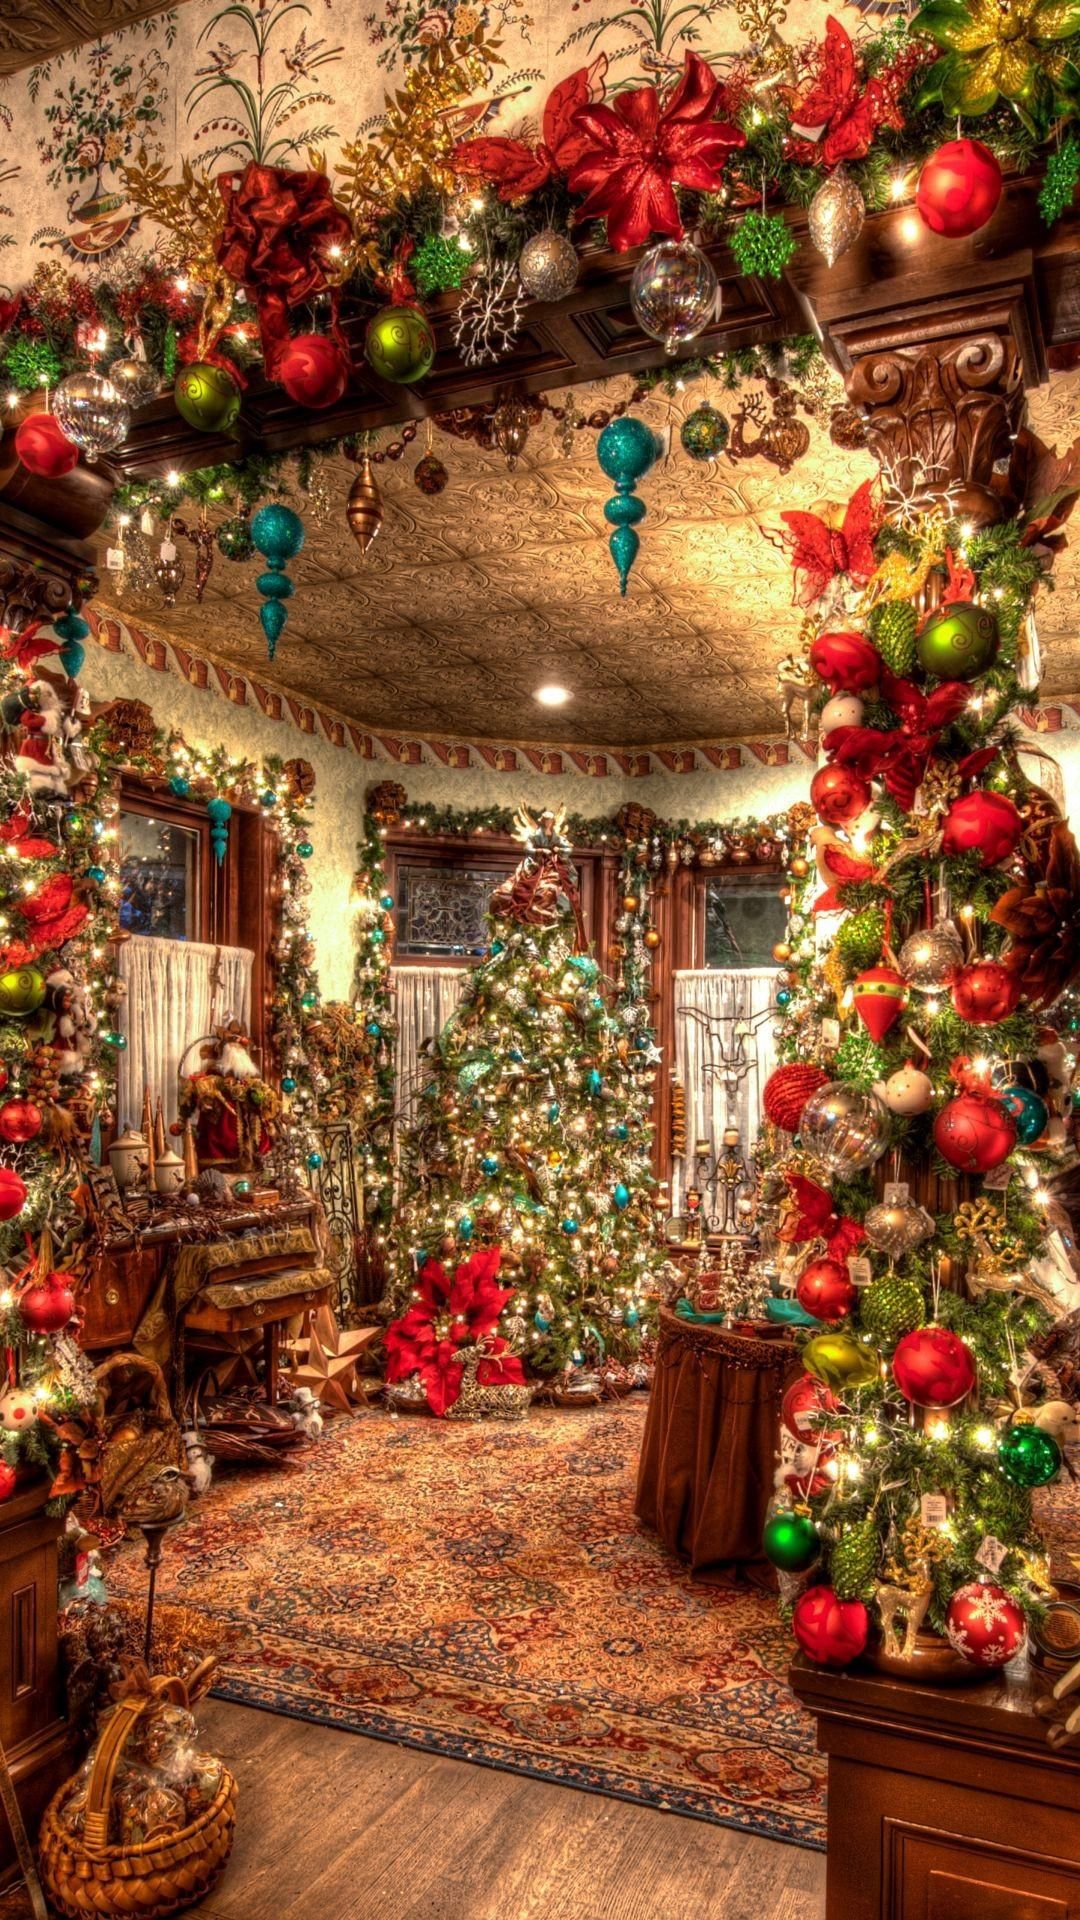 navidad fondos de pantalla hd,decoración navideña,árbol de navidad,navidad,decoración navideña,tradicion